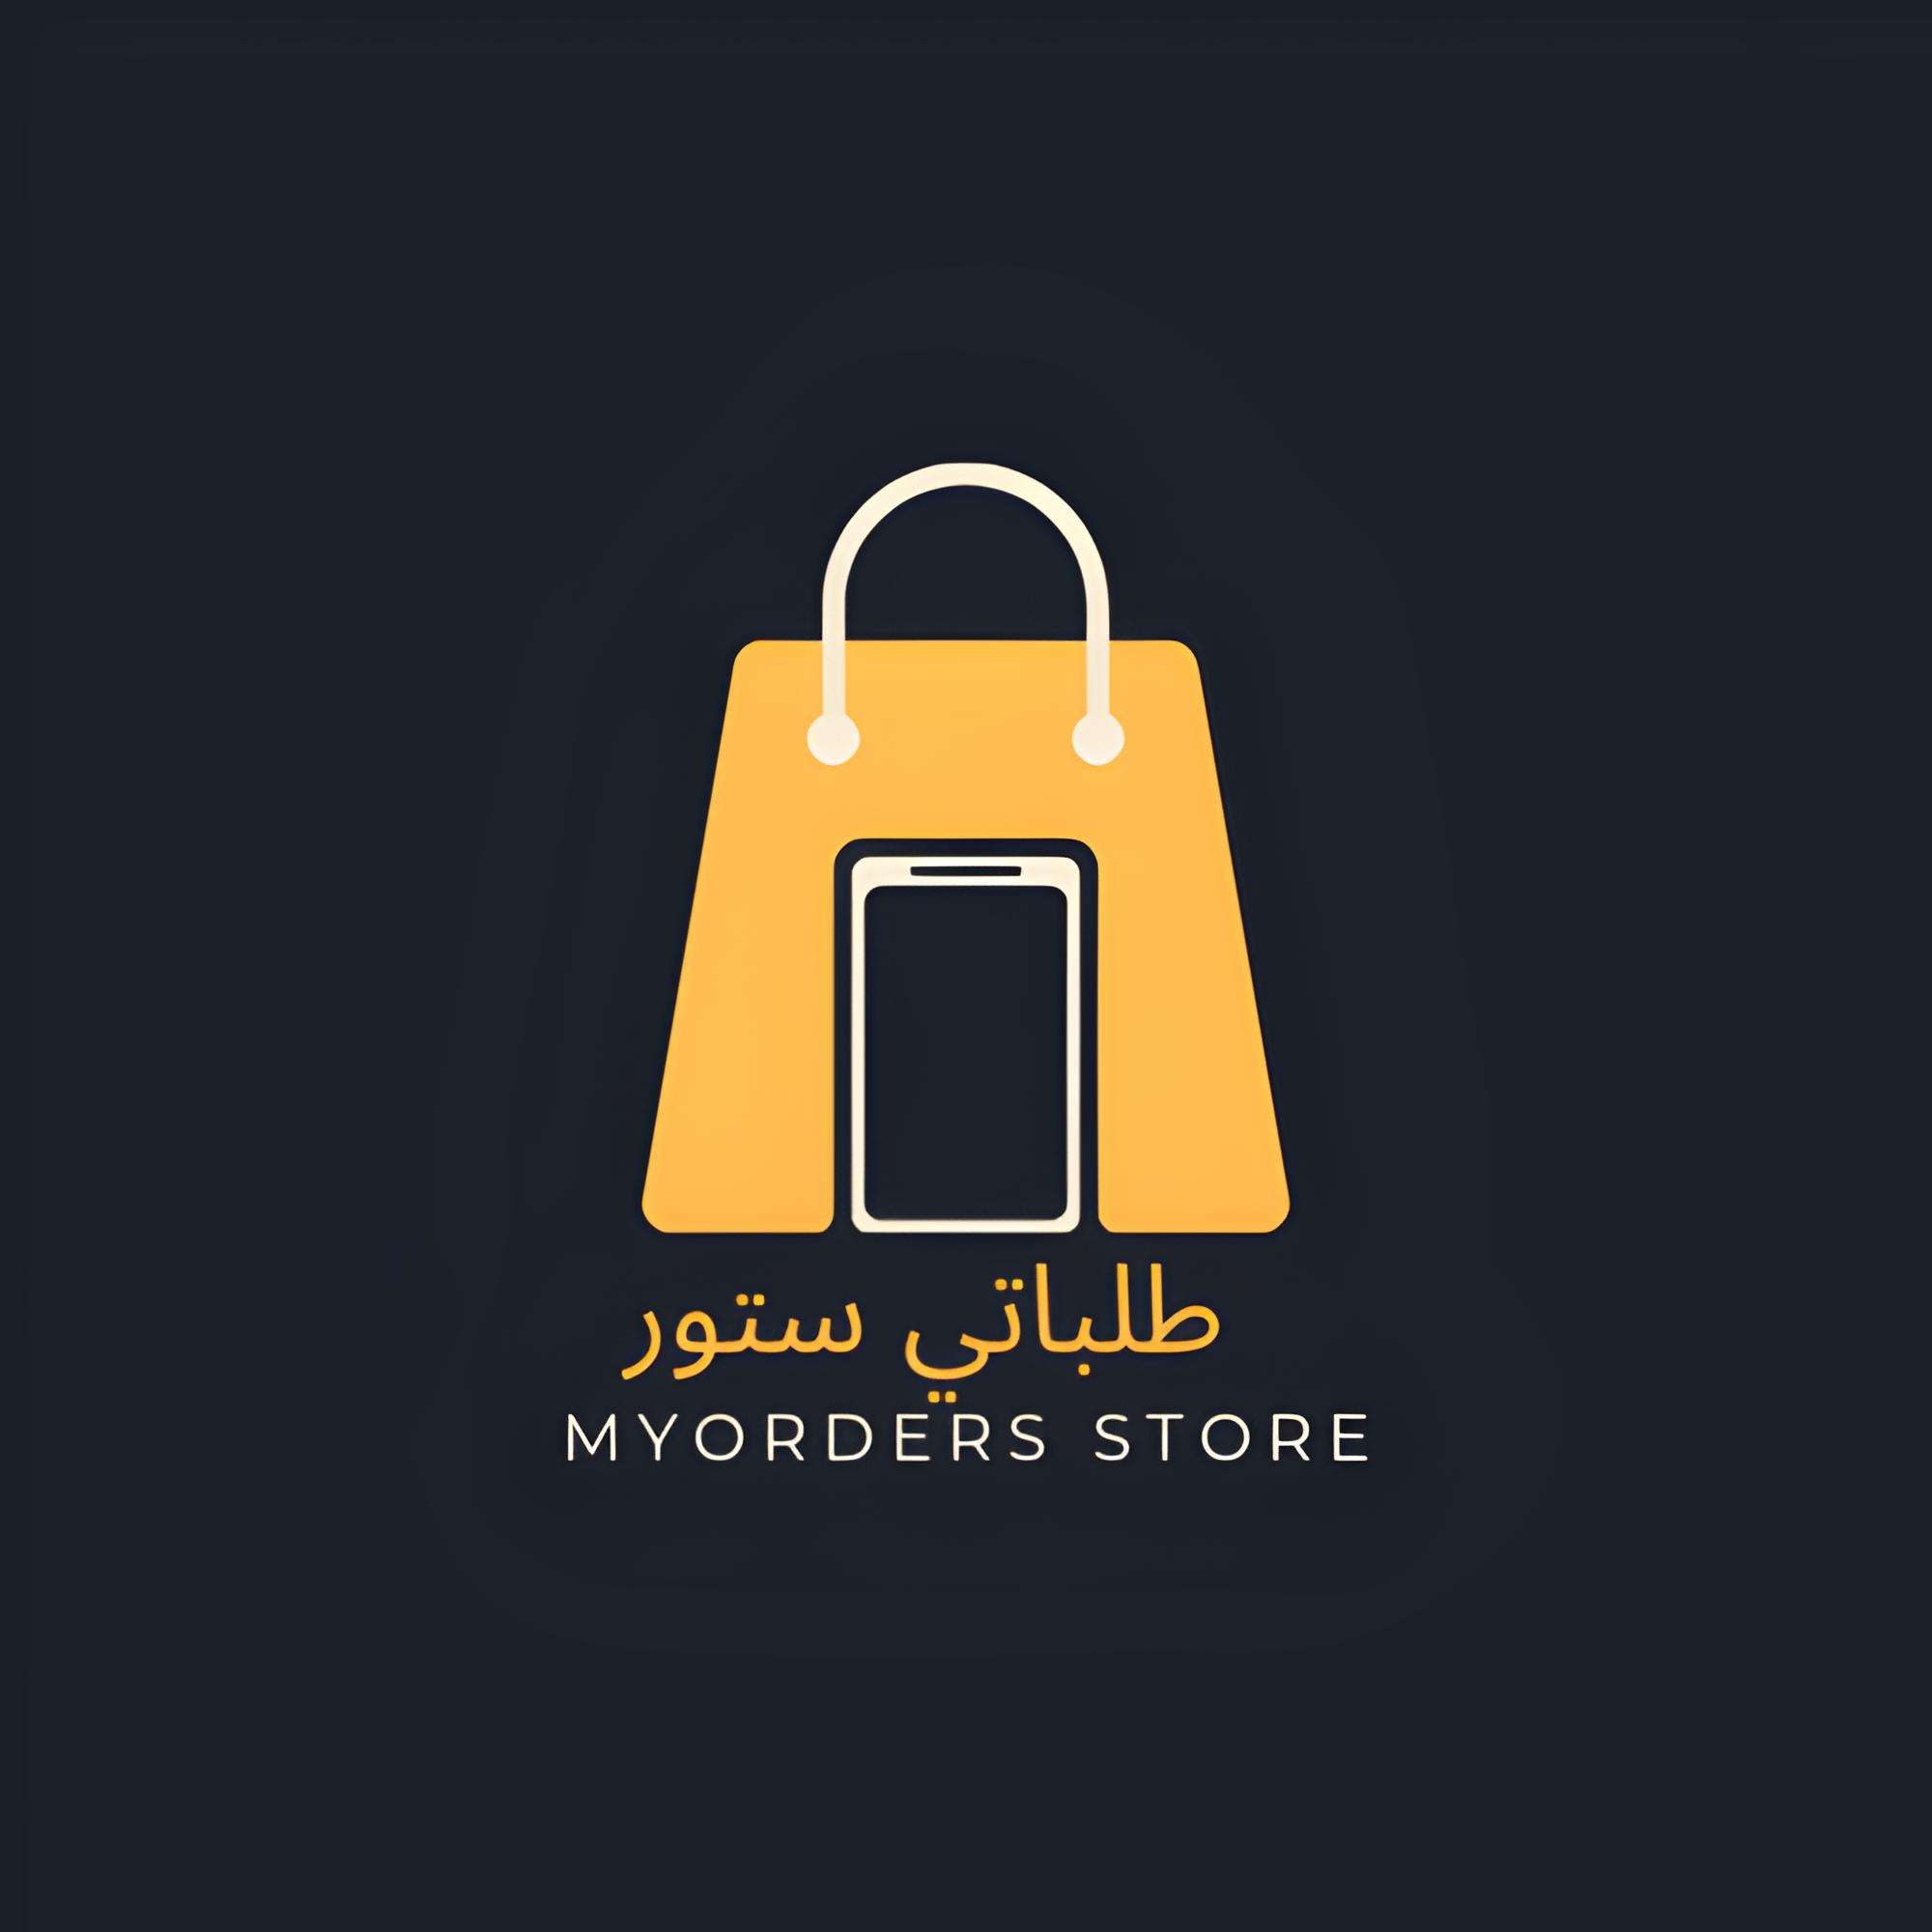 Myorders store